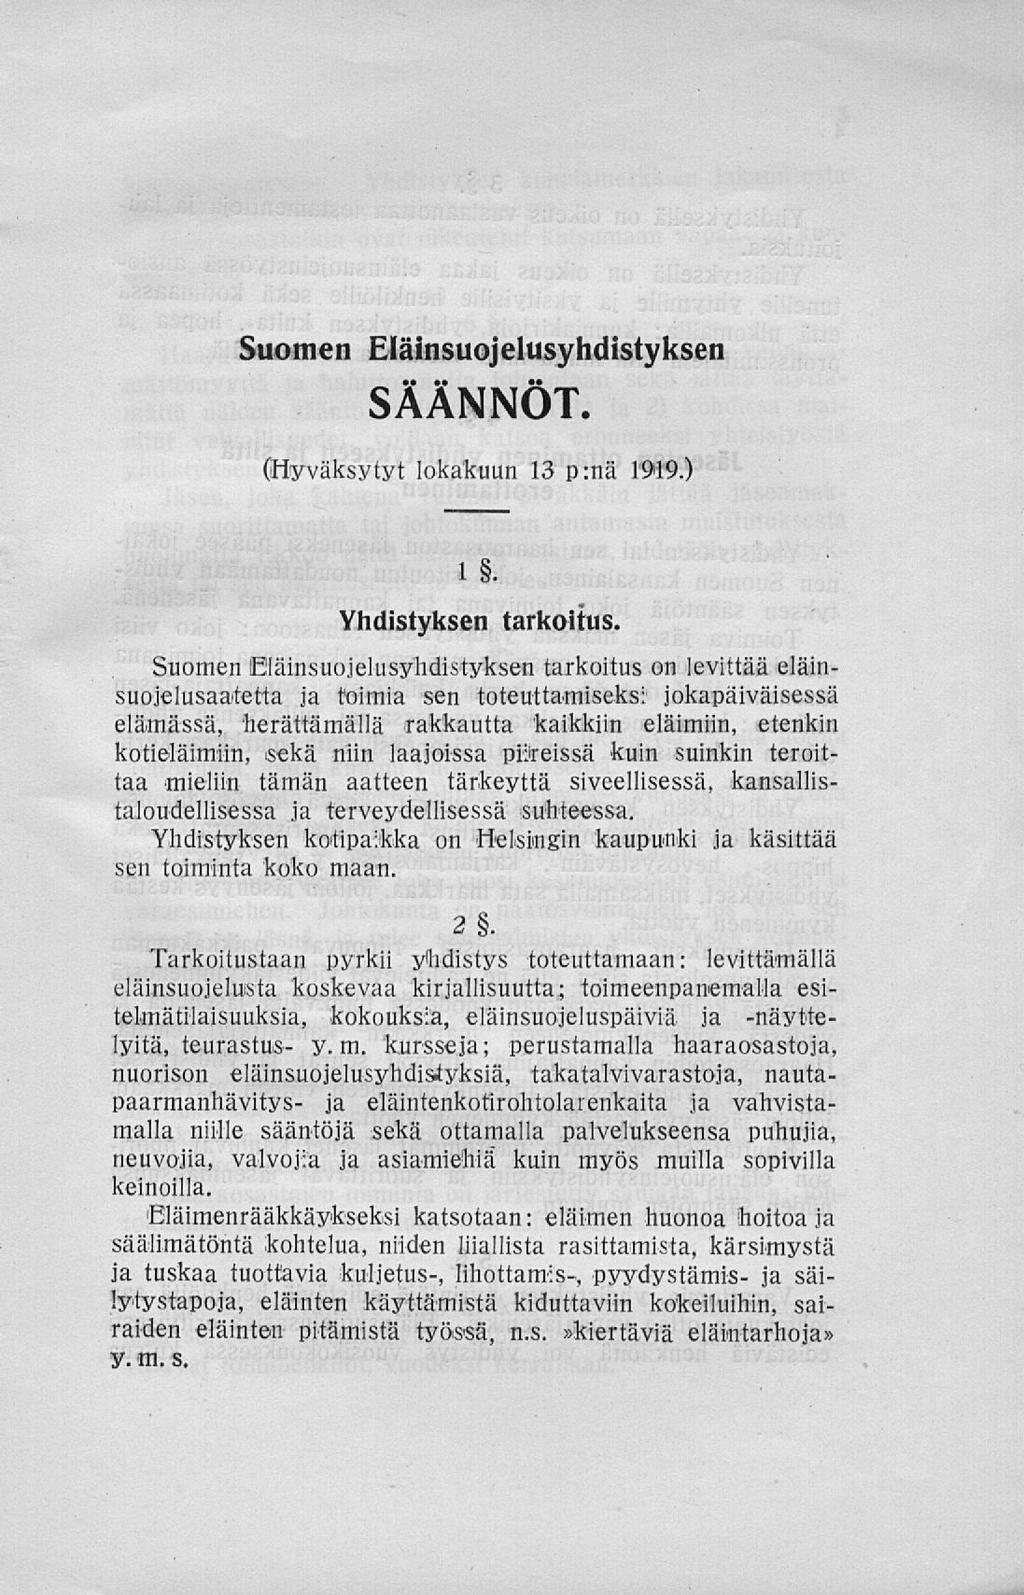 Suomen Eläinsuojelusyhdistyksen SÄÄNNÖT. (Hyväksytyt lokakuun 13 p:nä 1919.) Yhdistyksen tarkoitus.